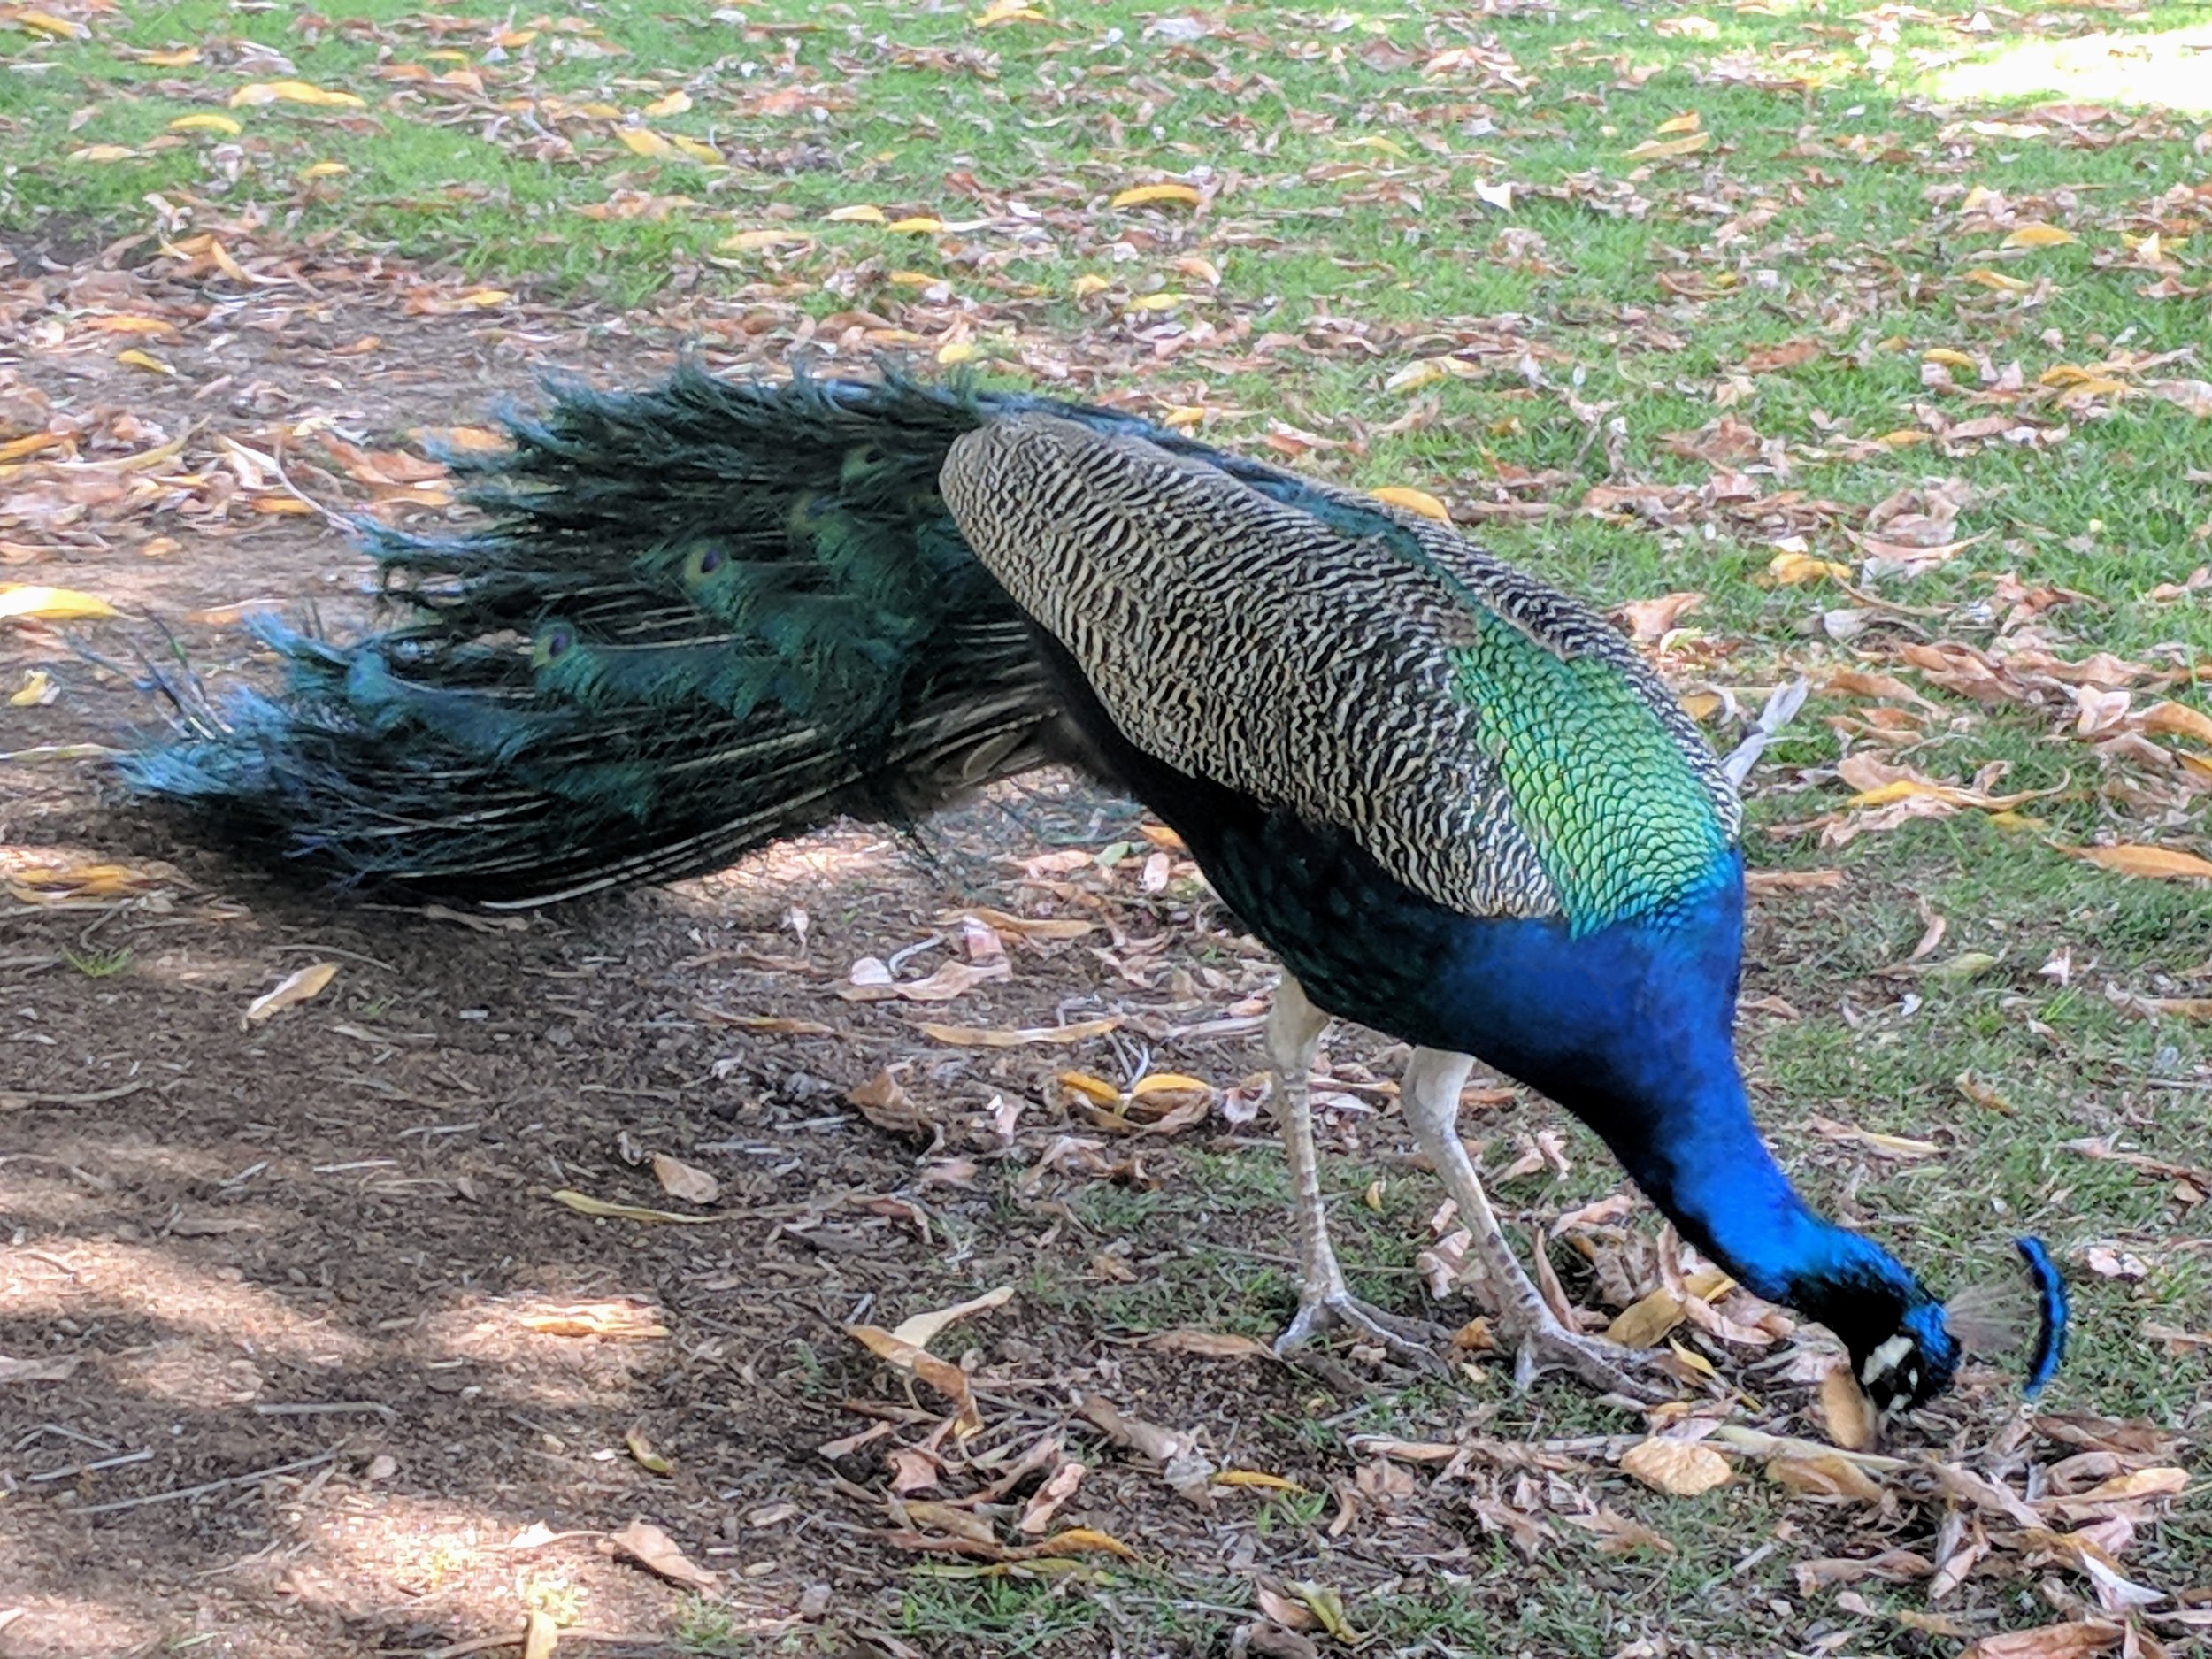 Peacock Friend at the LA Arboretum